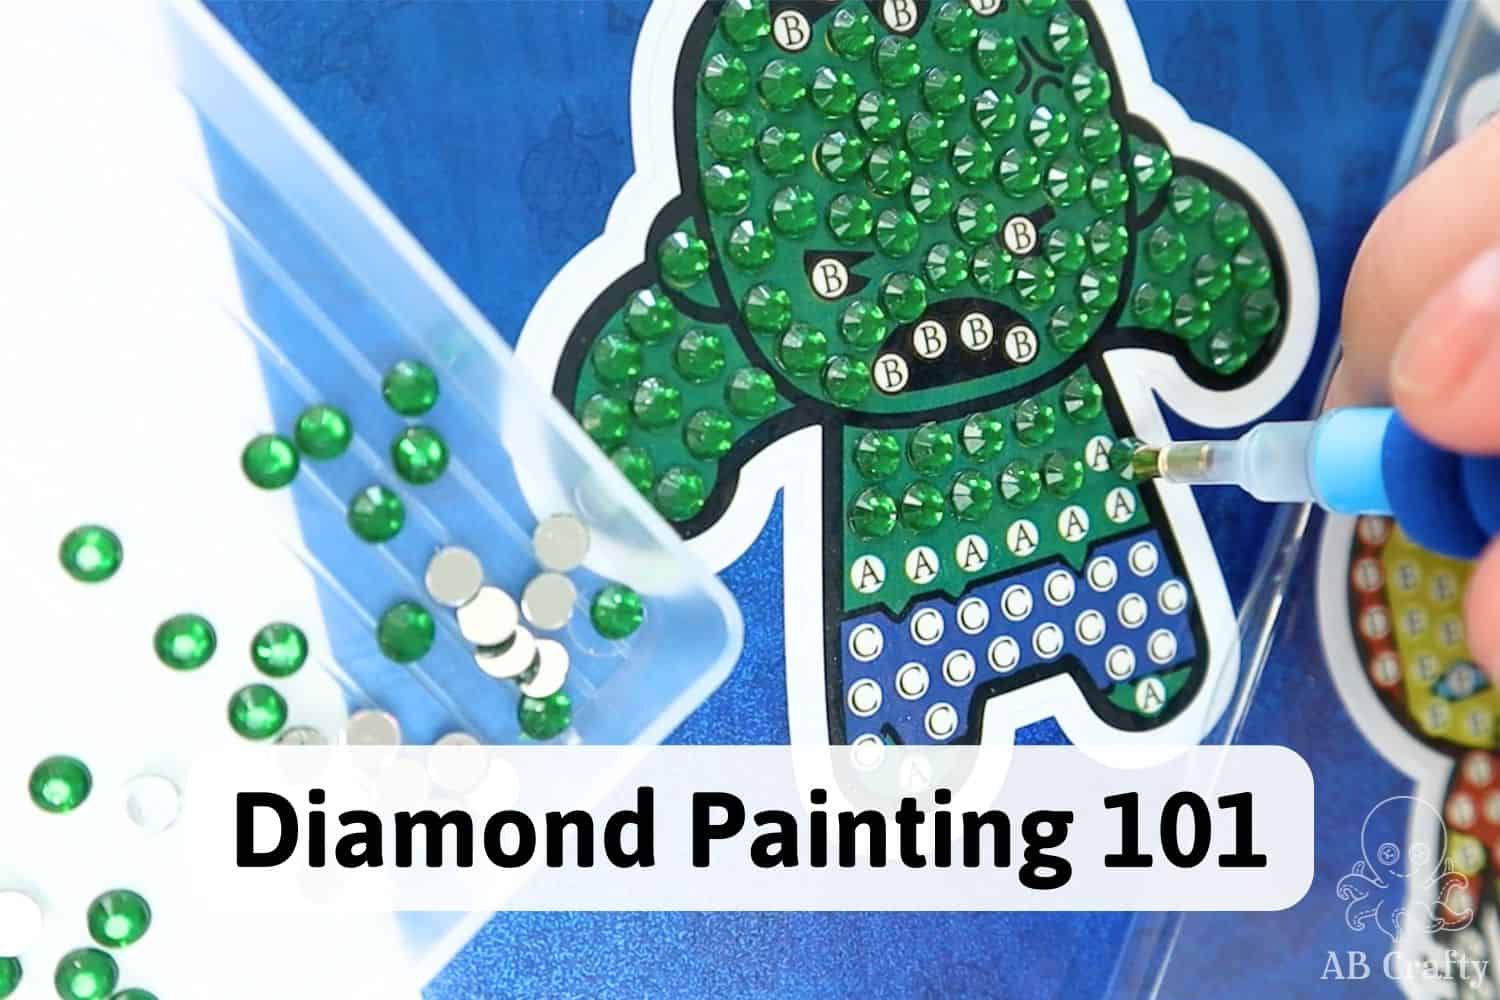 8 Pcs Diamond Painting Coasters With Holder,diy Small Diamond Art